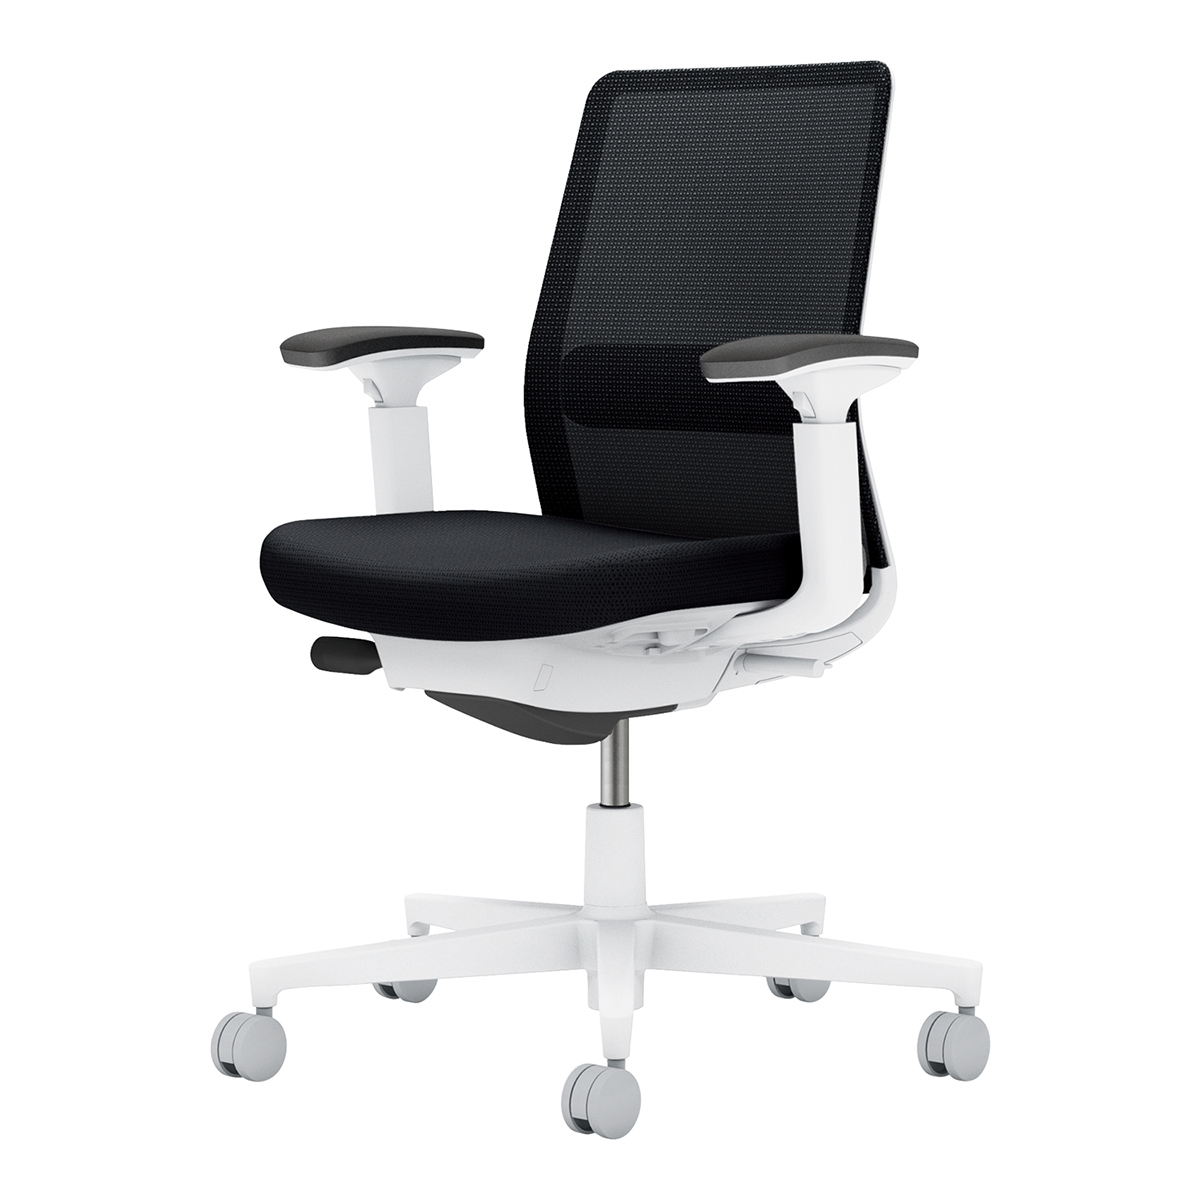 即発送可能 メーカー直送 コクヨ チェア オフィスチェア 椅子 ミトラ2